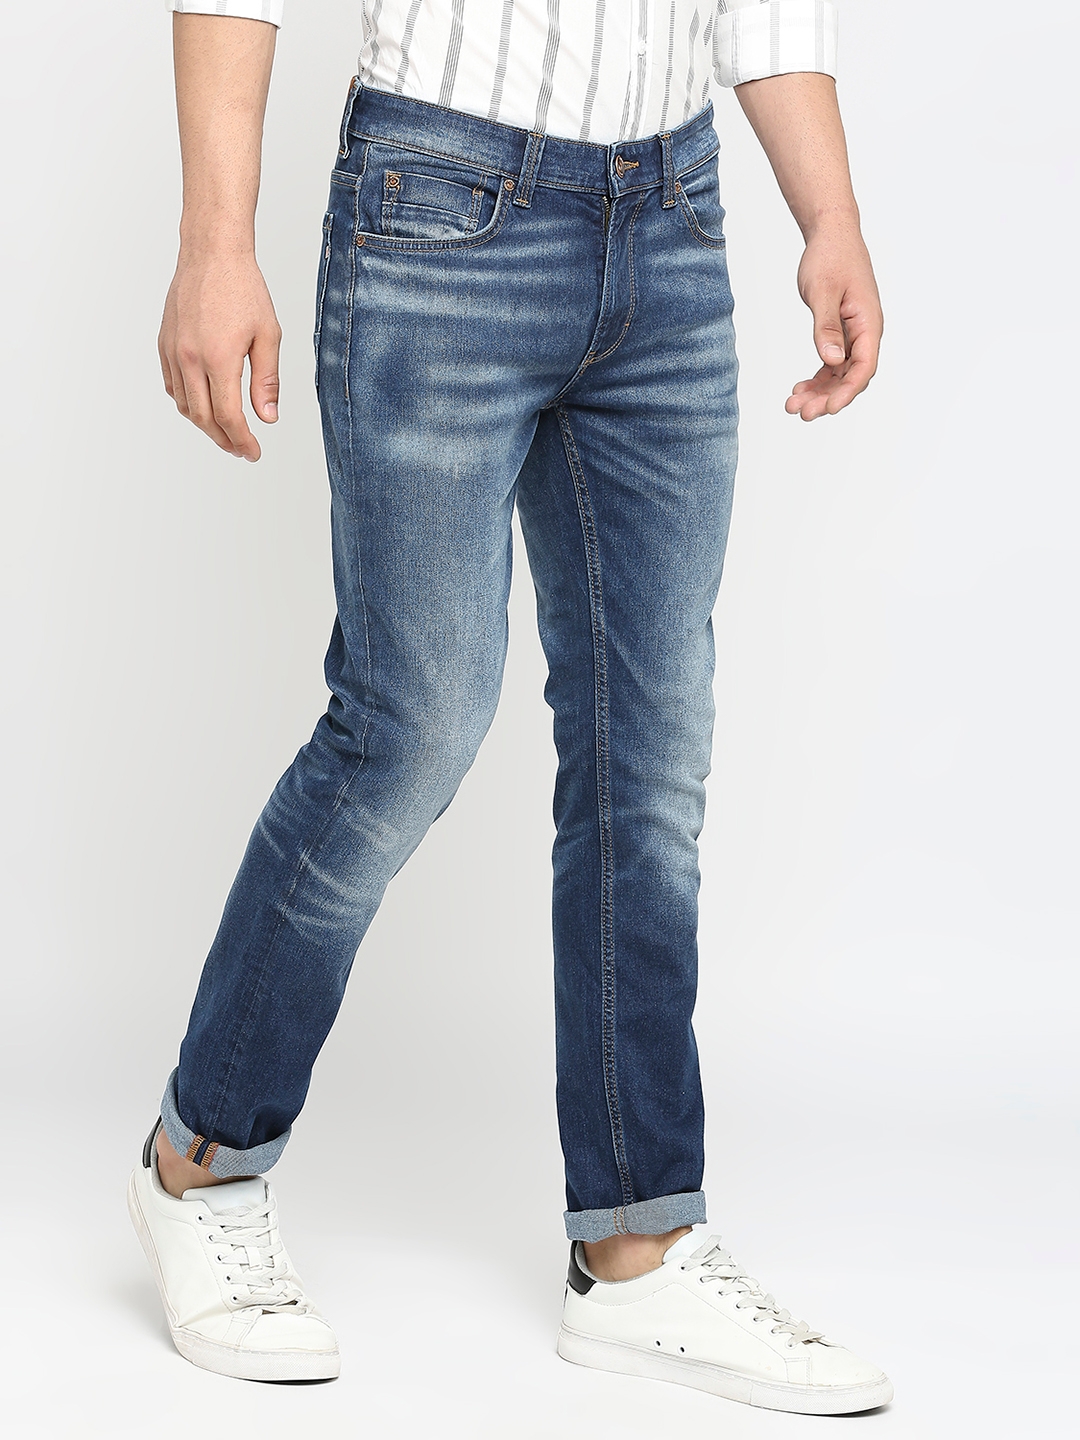 Spykar | Men's Blue Cotton Solid Jeans 2